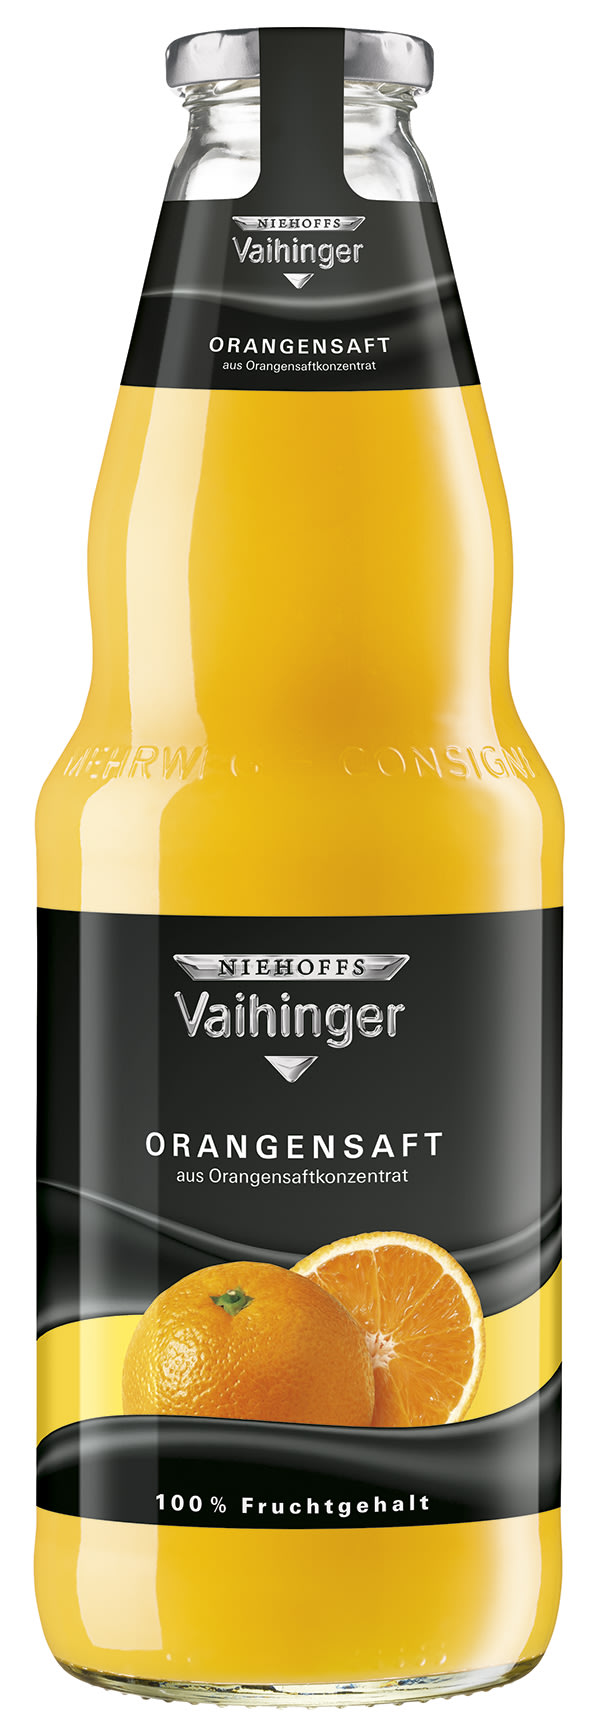 Niehoffs Vaihinger Orangensaft Kasten 6 x 1 l Glas Mehrweg